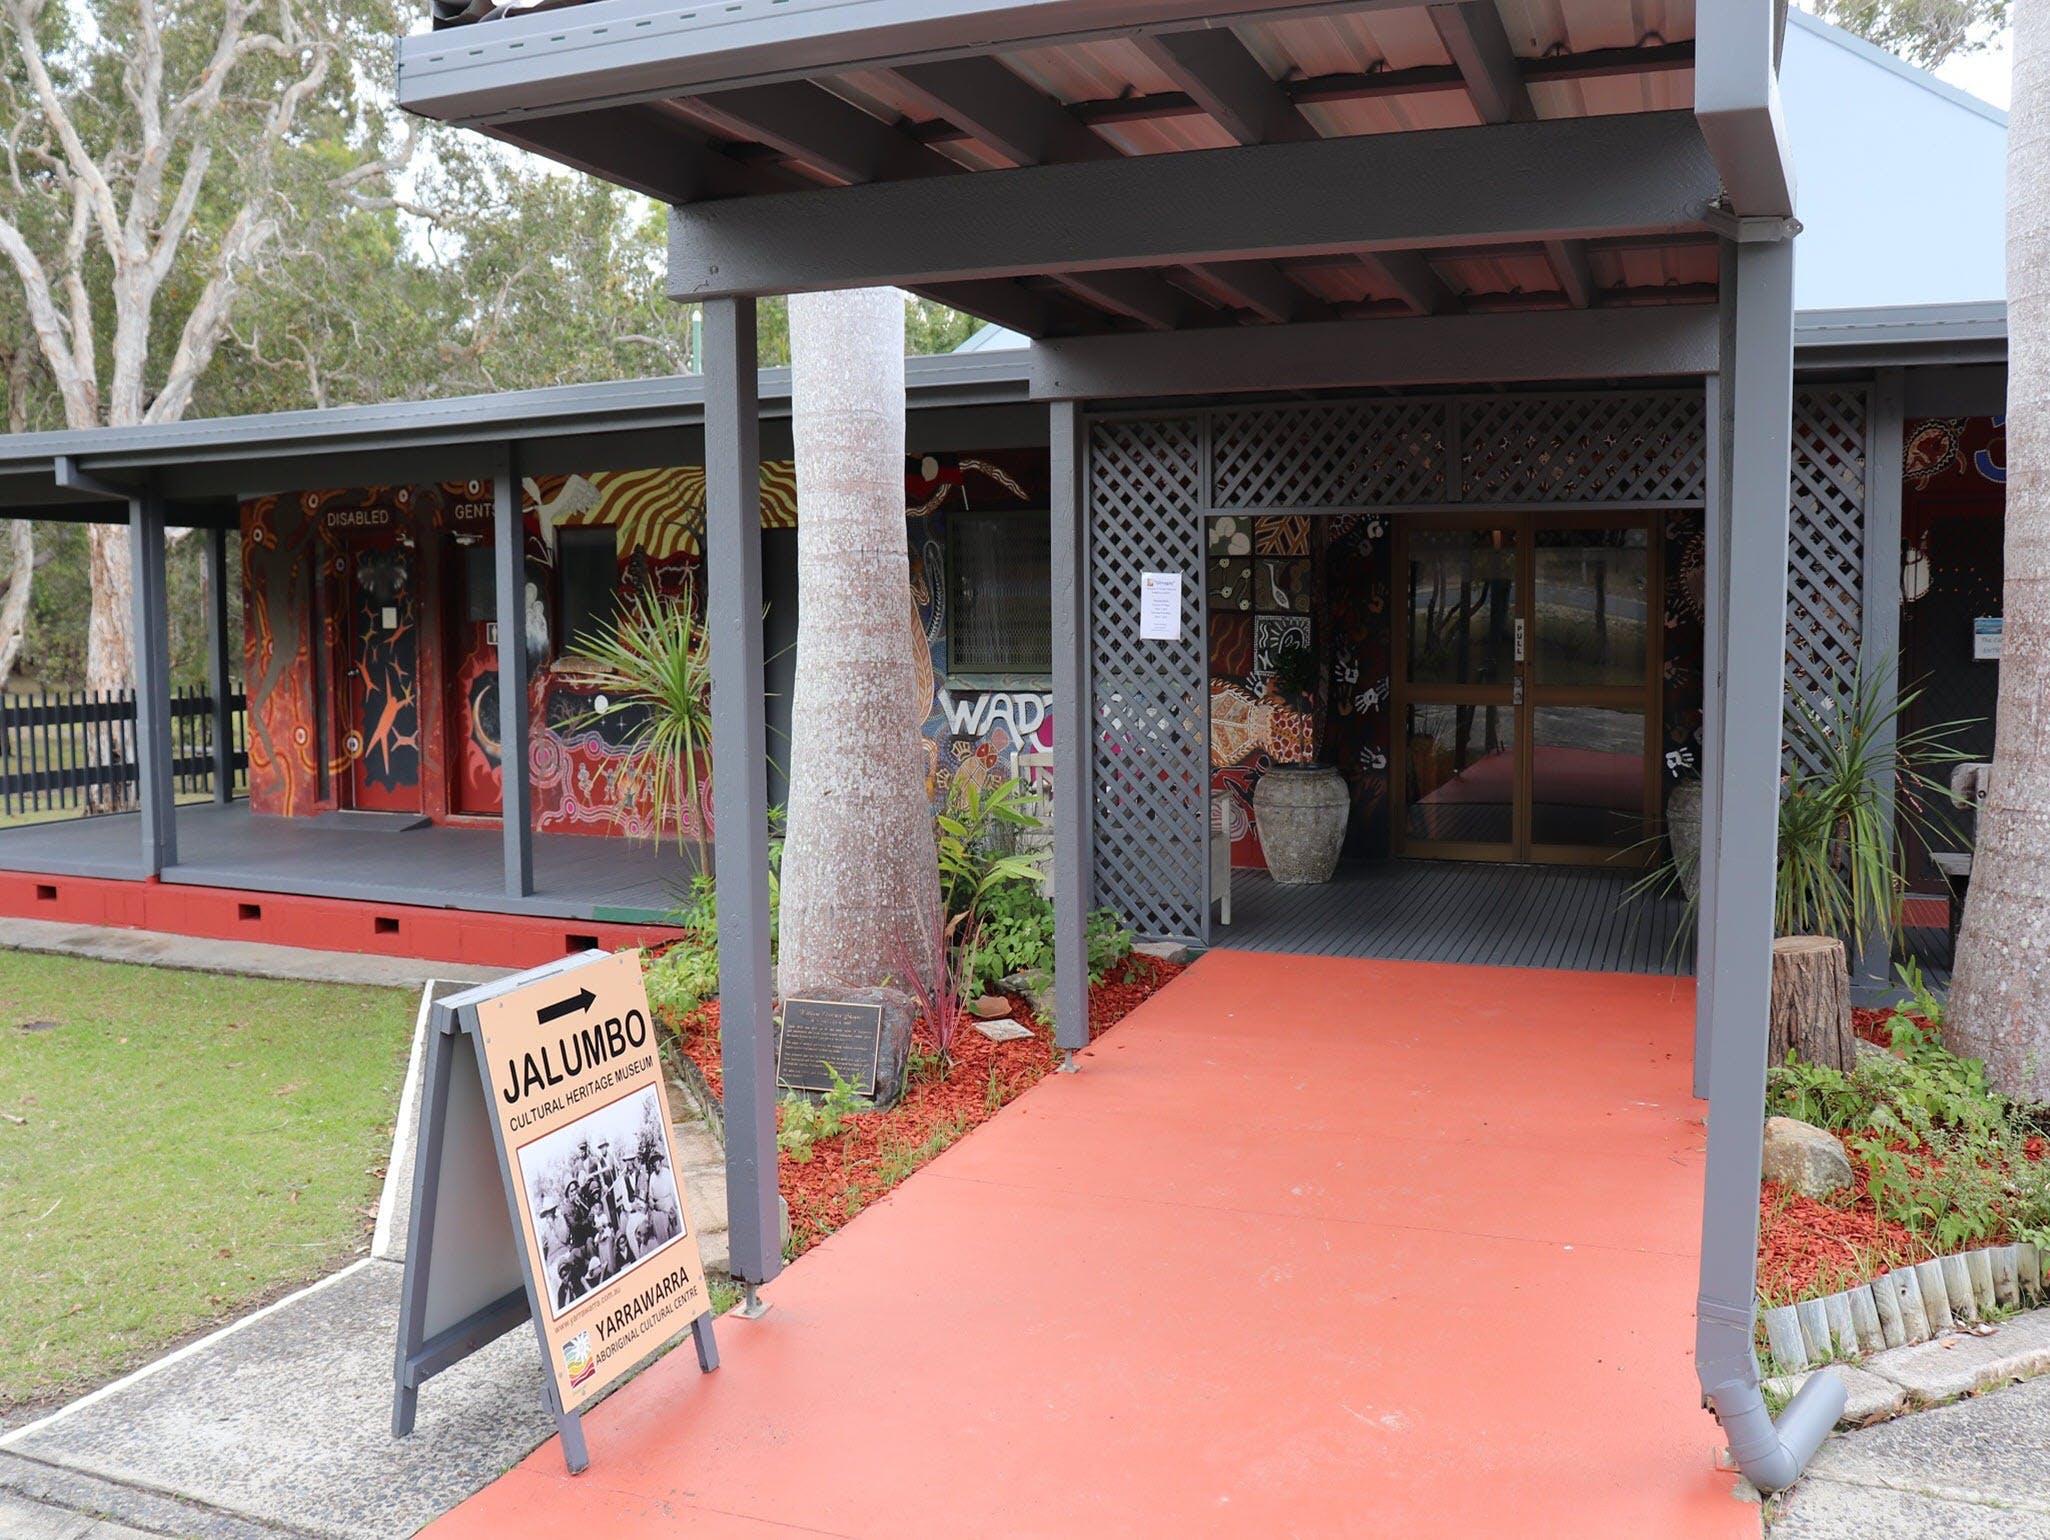 Yarrawarra Aboriginal Cultural Centre - Find Attractions